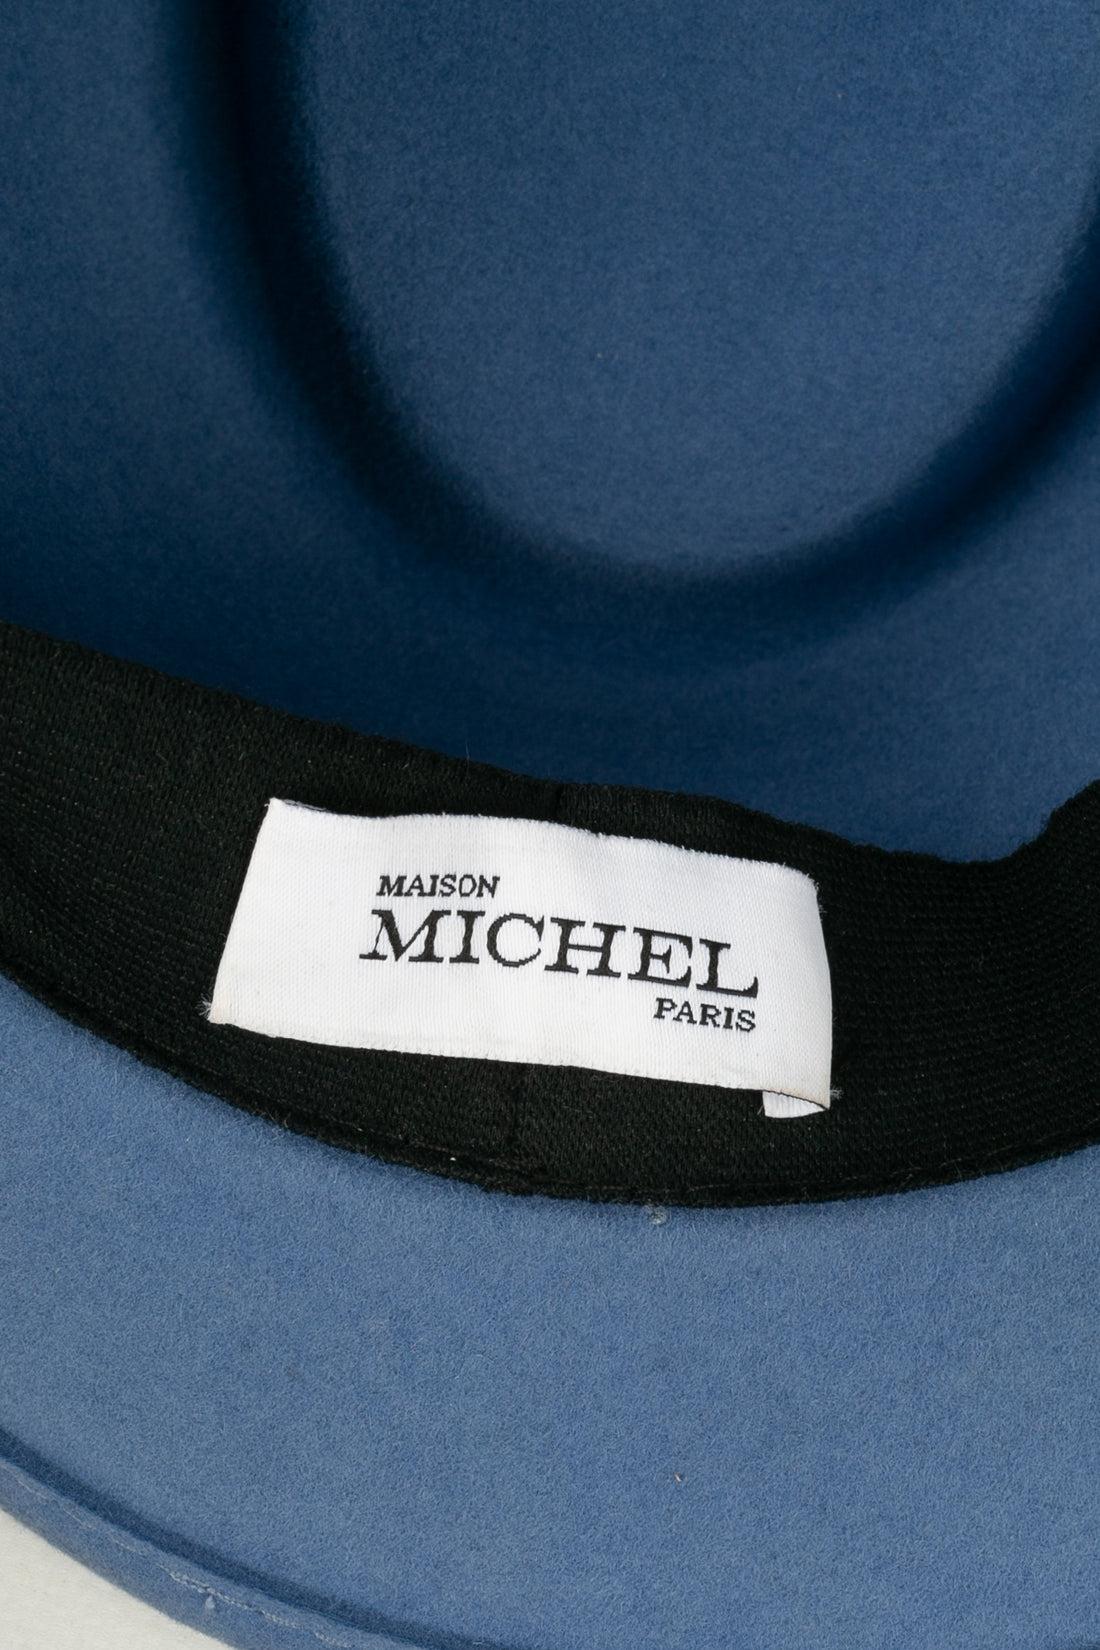 Maison Michel Blue Felt Hat For Sale 4